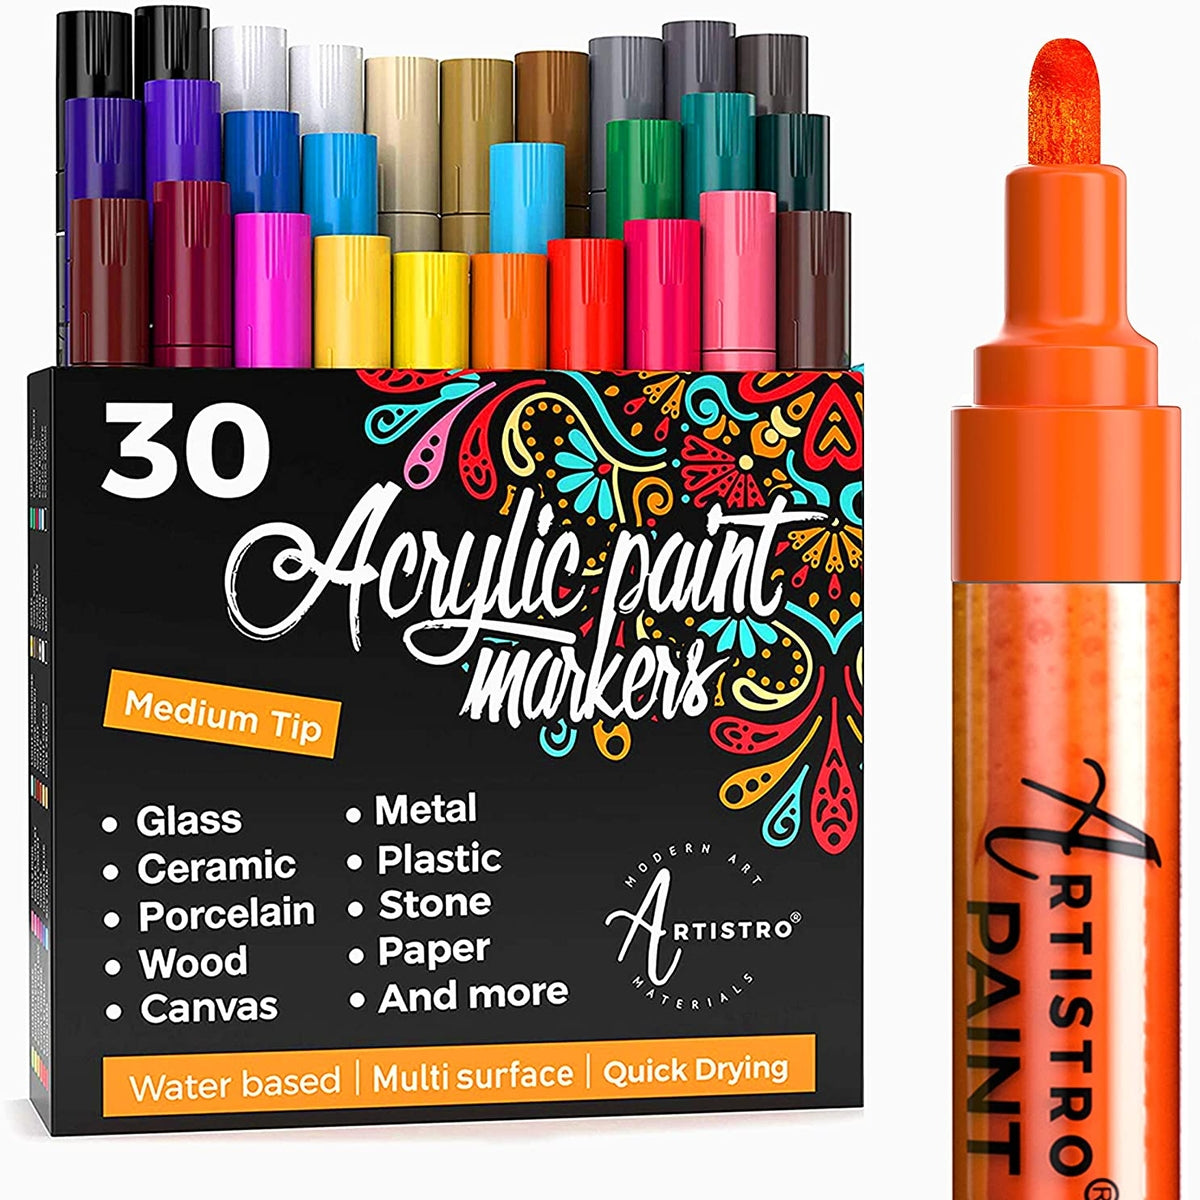 Artistro art and craft bundles: Gorgeous Paint Pen Art Bundle